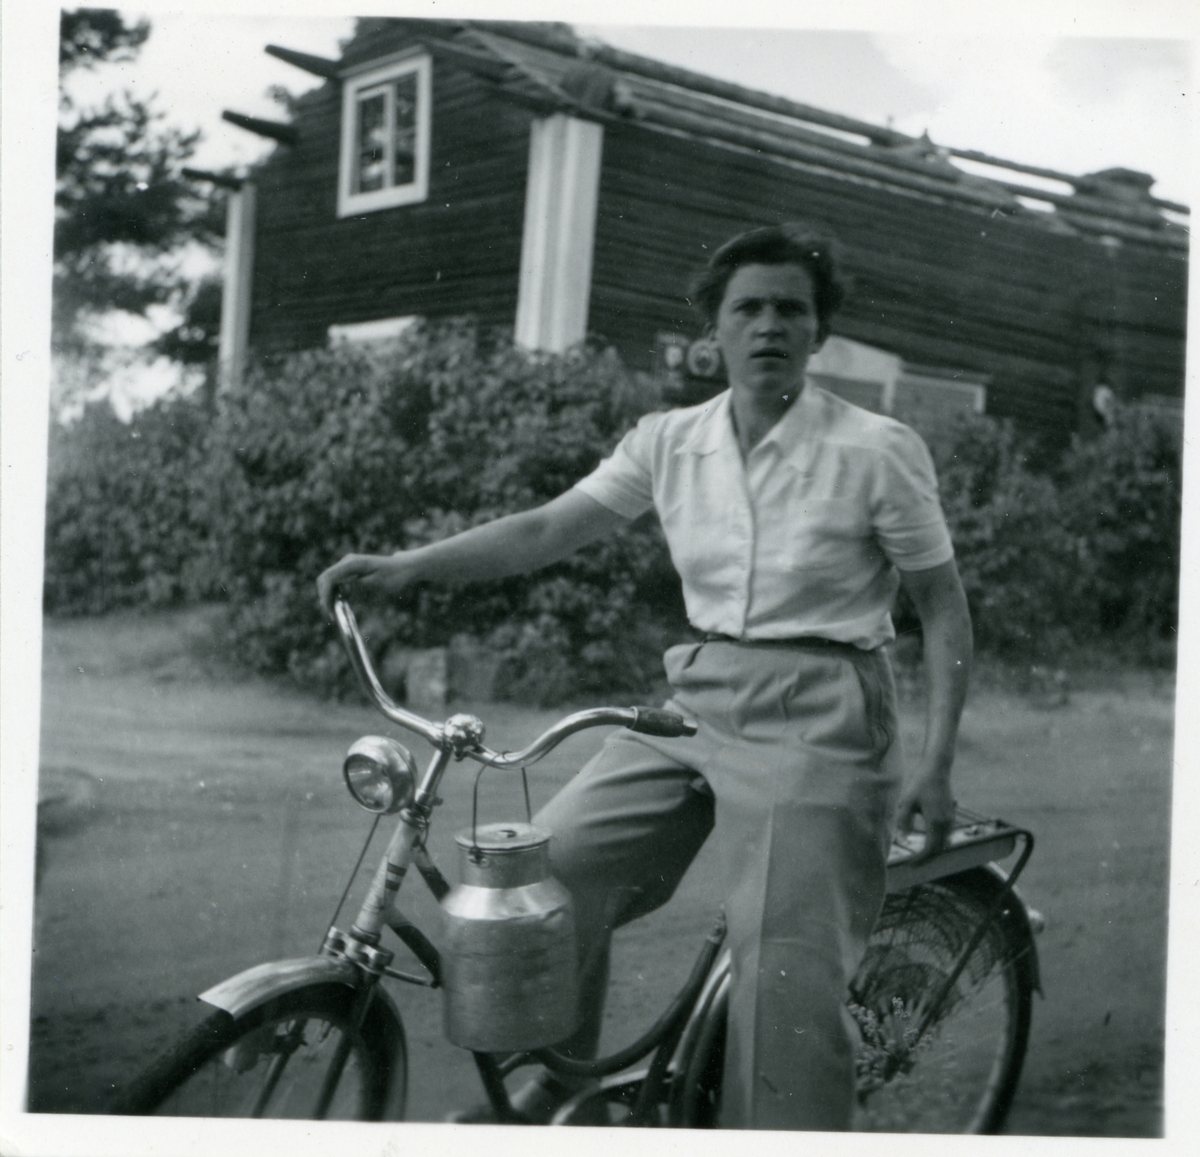 Västmanland.
Ungdom på cykel. 1940-tal.